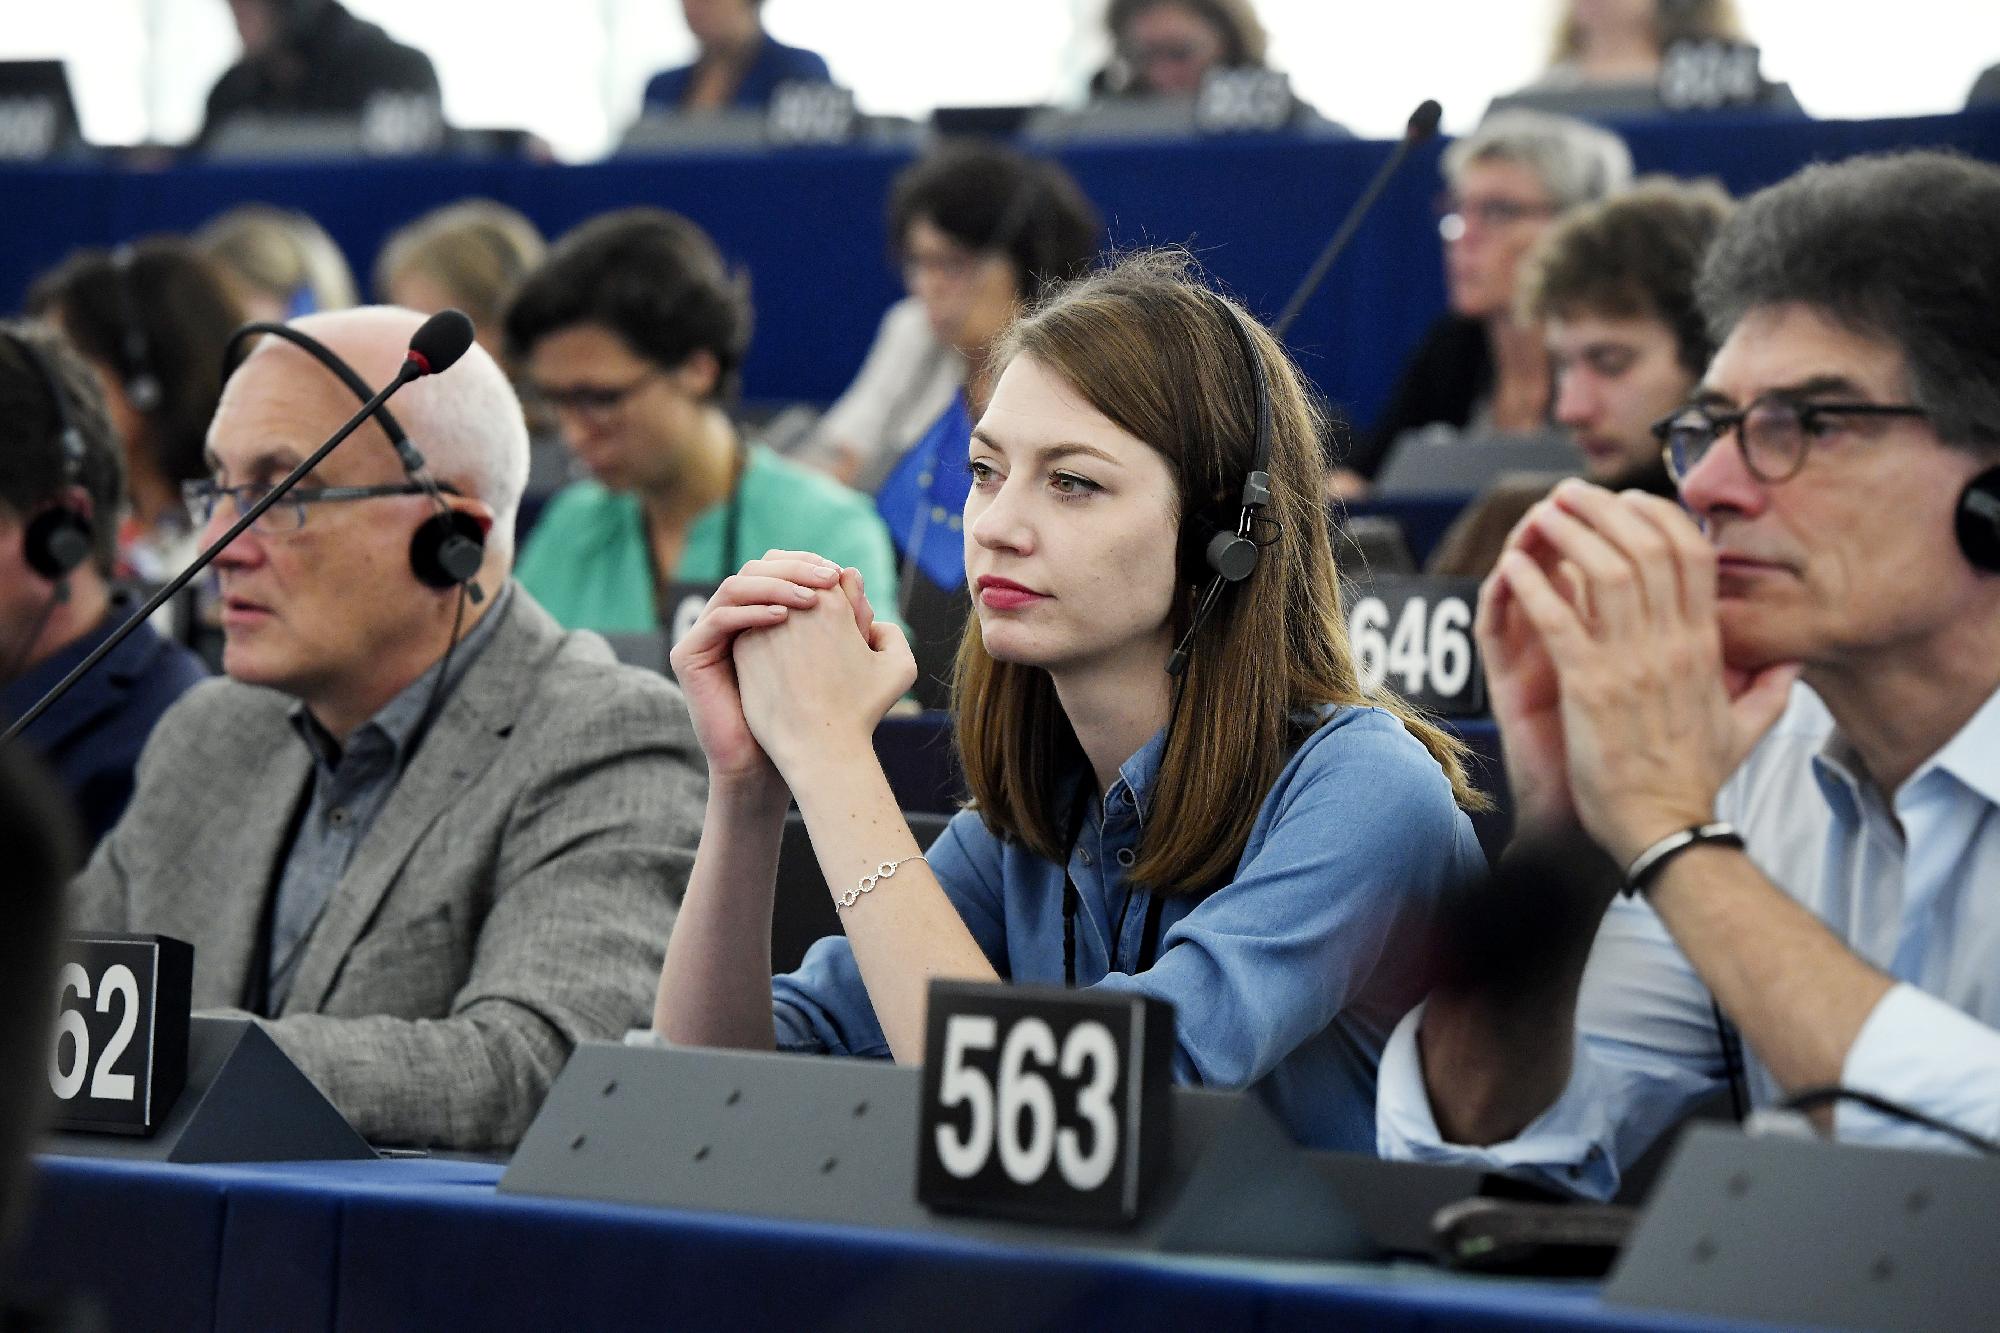 Az Európai Parlament (EP) plenáris ülése